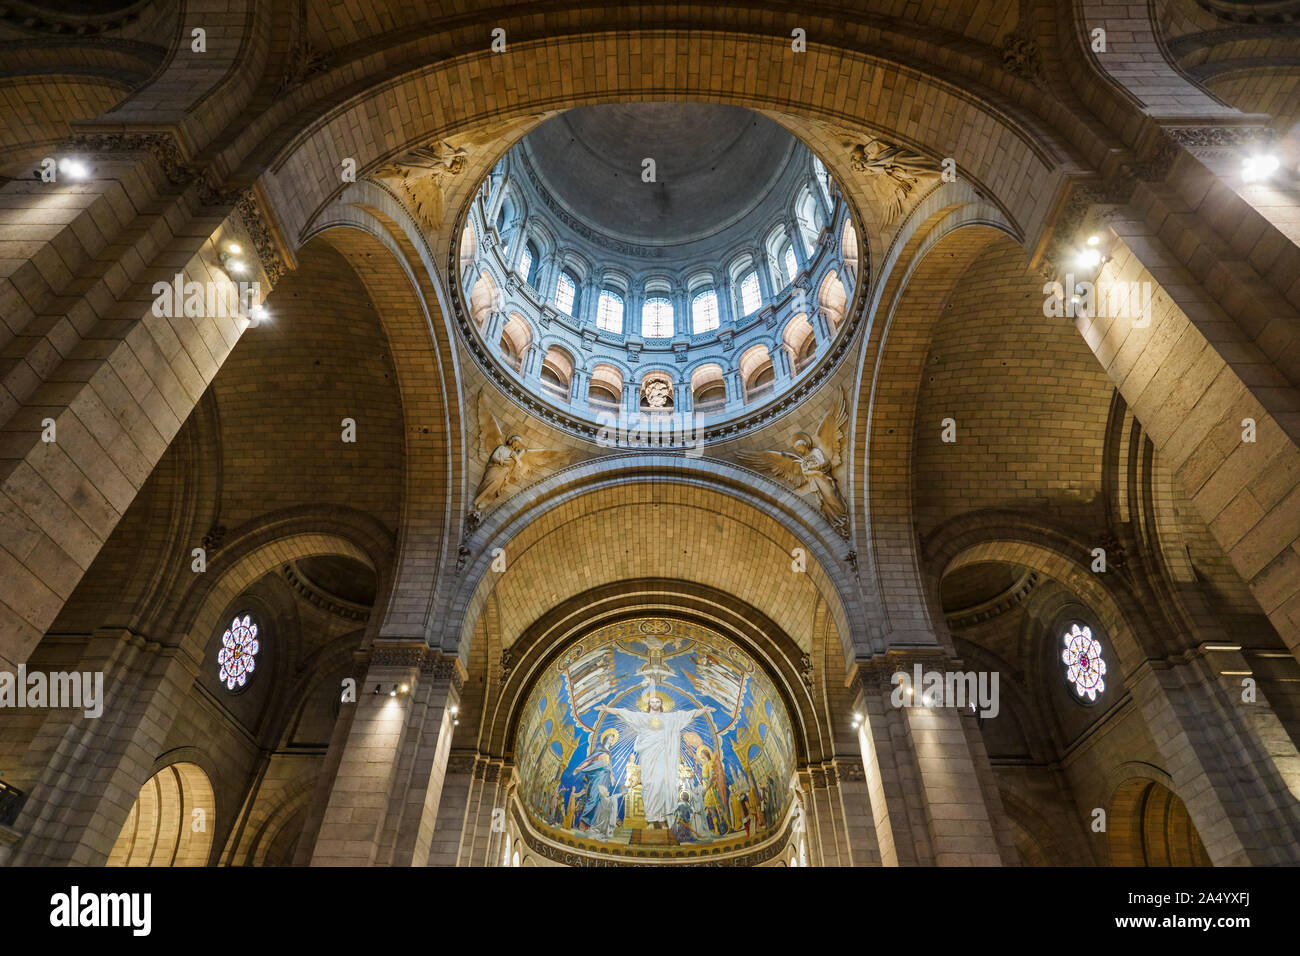 Détails de l'intérieur dome et état de conservation de la Basilique du Sacré-Cœur à Montmartre, Paris. La France. 1 Septembre, 2017 Banque D'Images